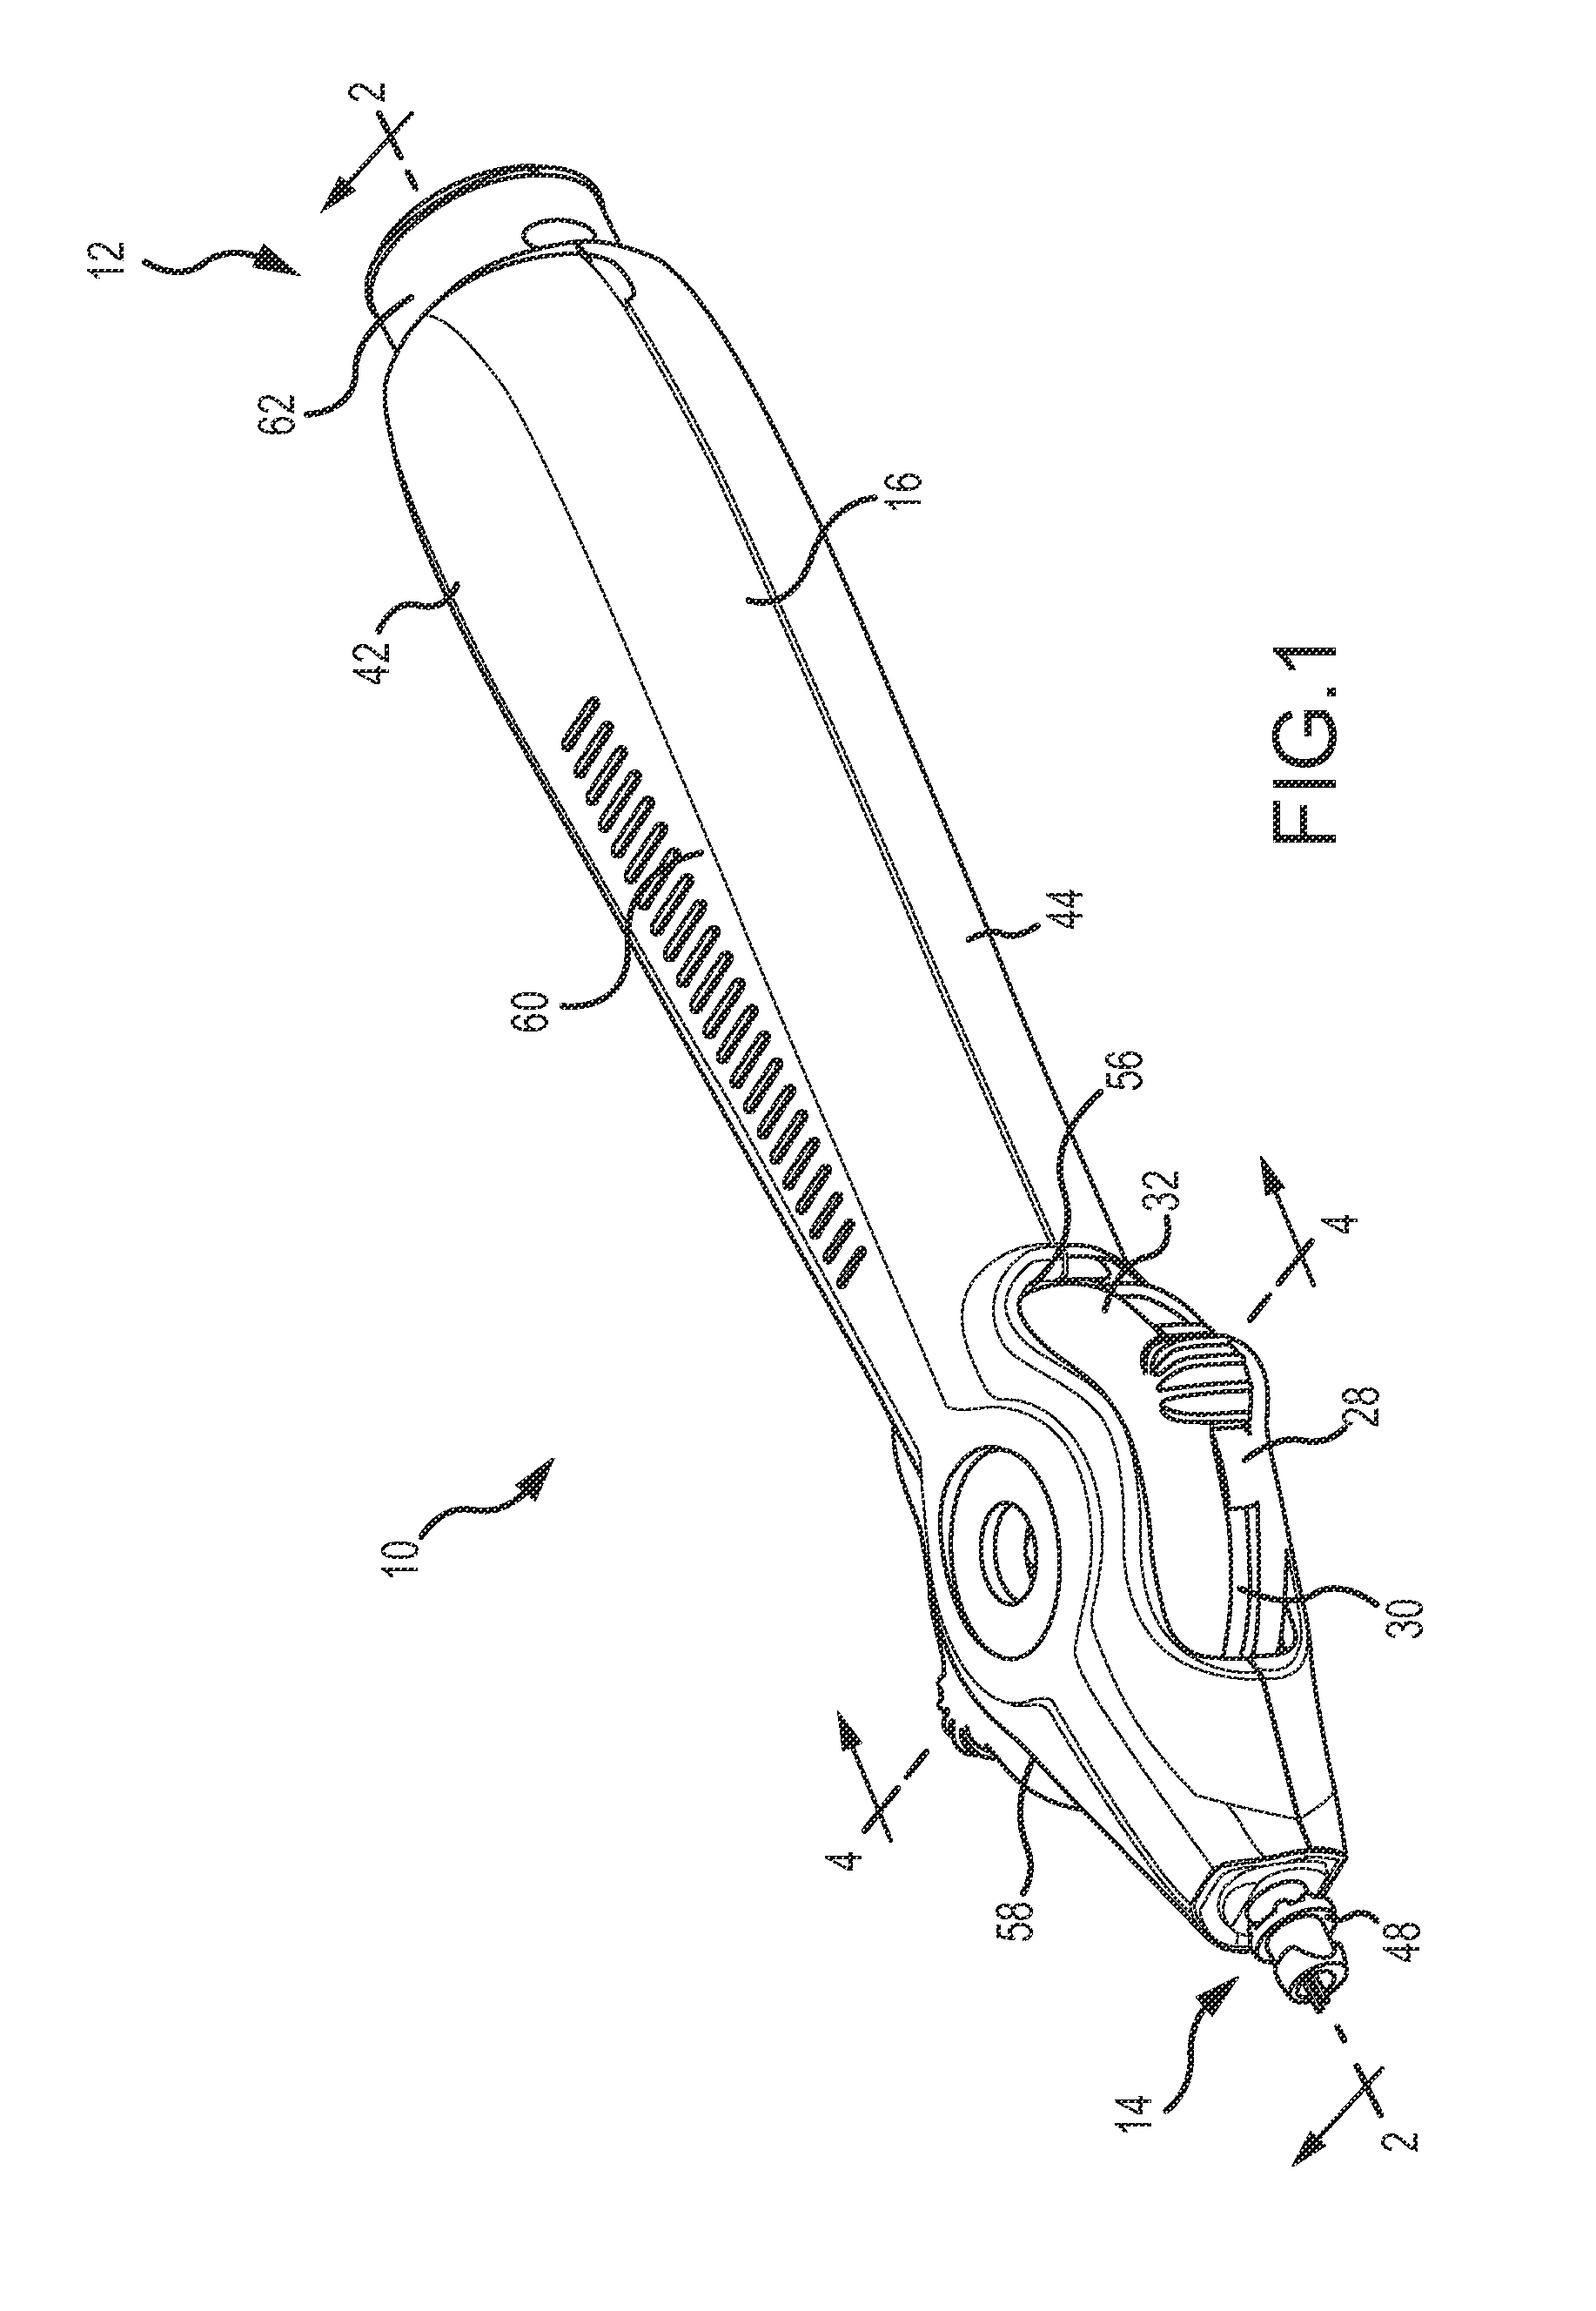 Push-coil steering mechanism